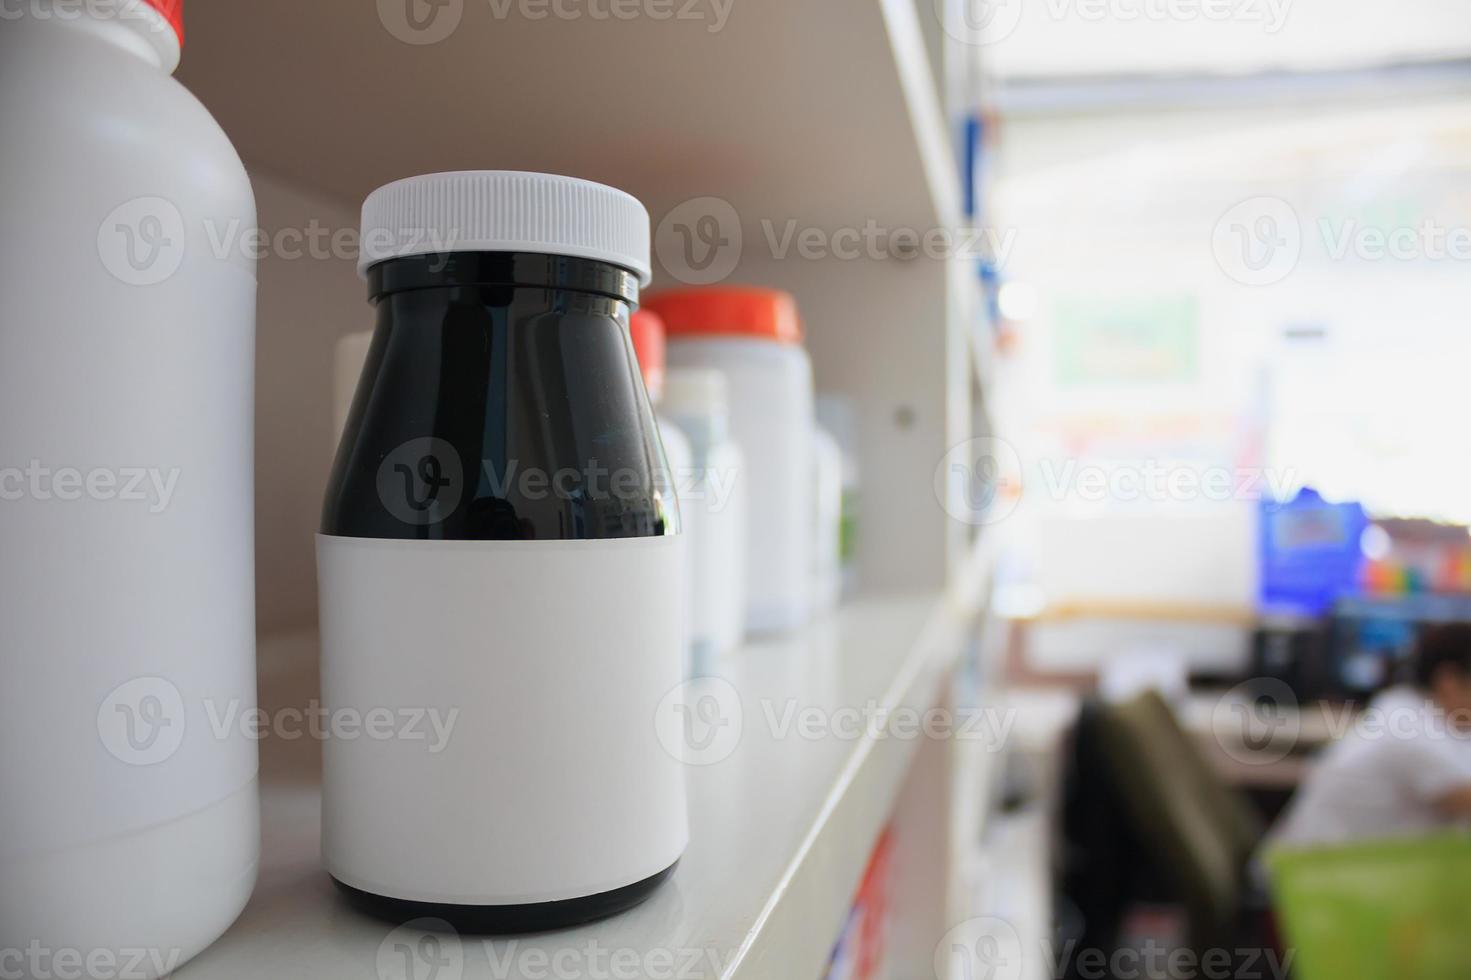 medicinflaskor ordnade på hyllan på apoteket foto